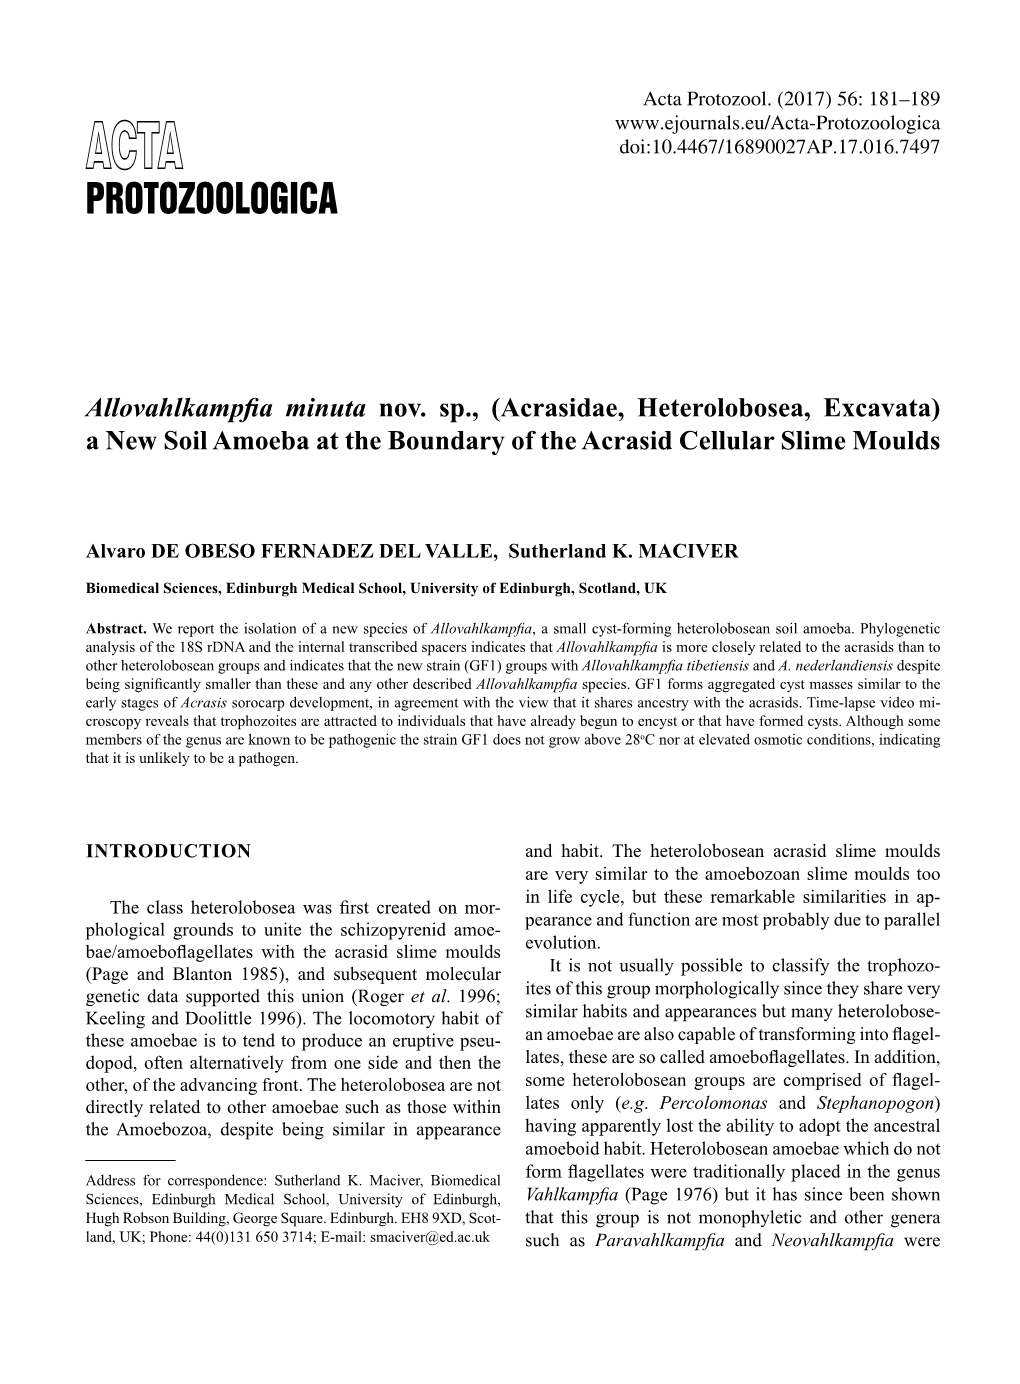 Protozoologica ACTA Doi:10.4467/16890027AP.17.016.7497 PROTOZOOLOGICA